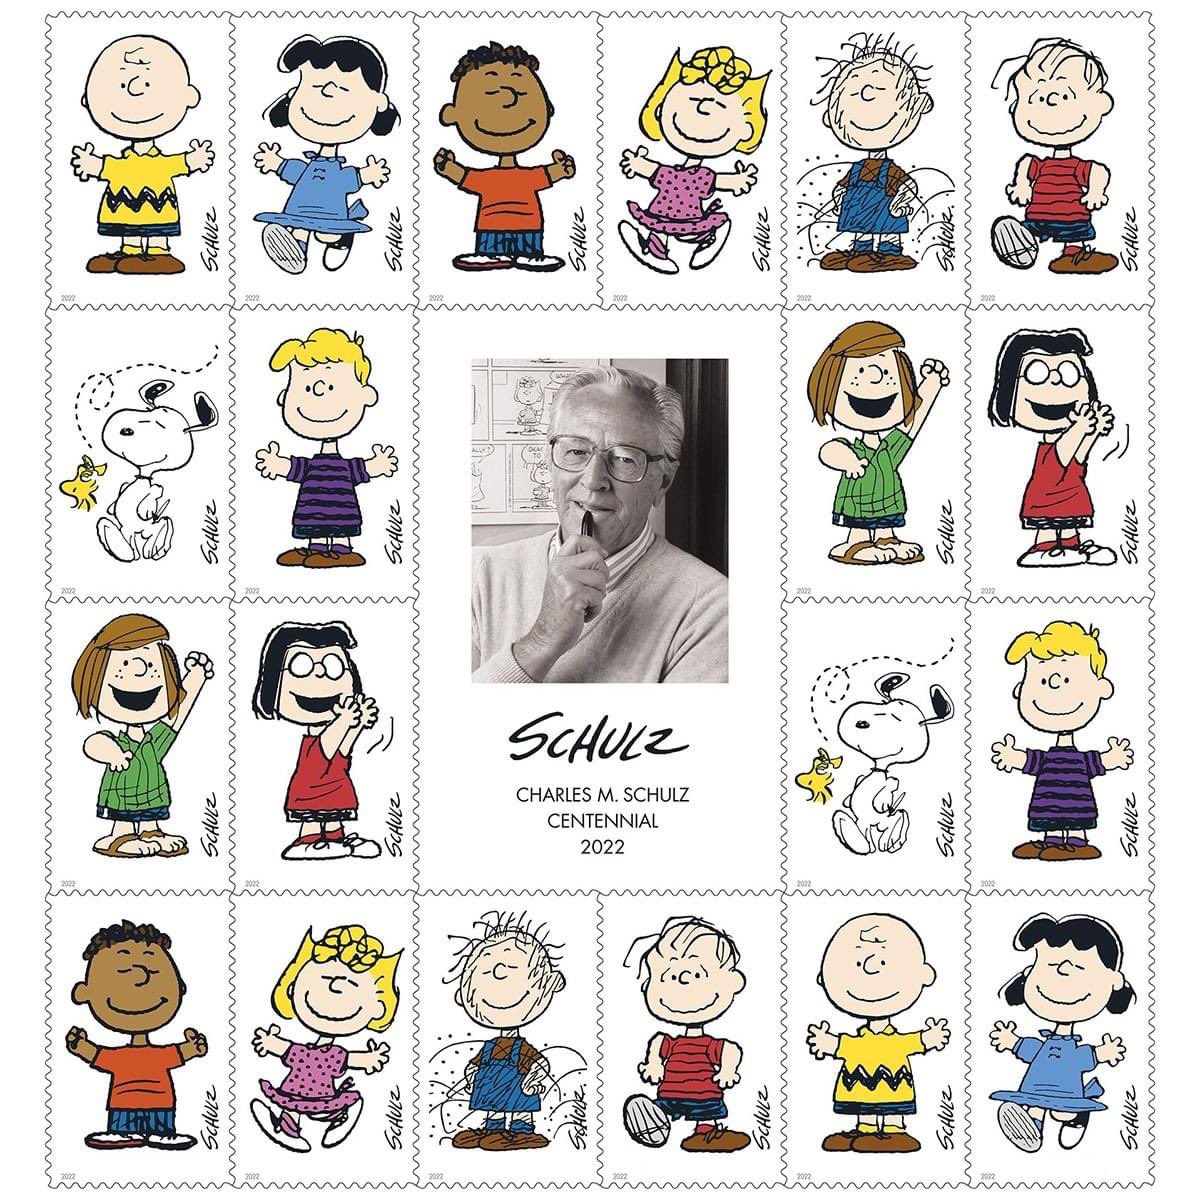 Happy birthday, Charles Schultz!
#Peanuts #CharlesSchultz